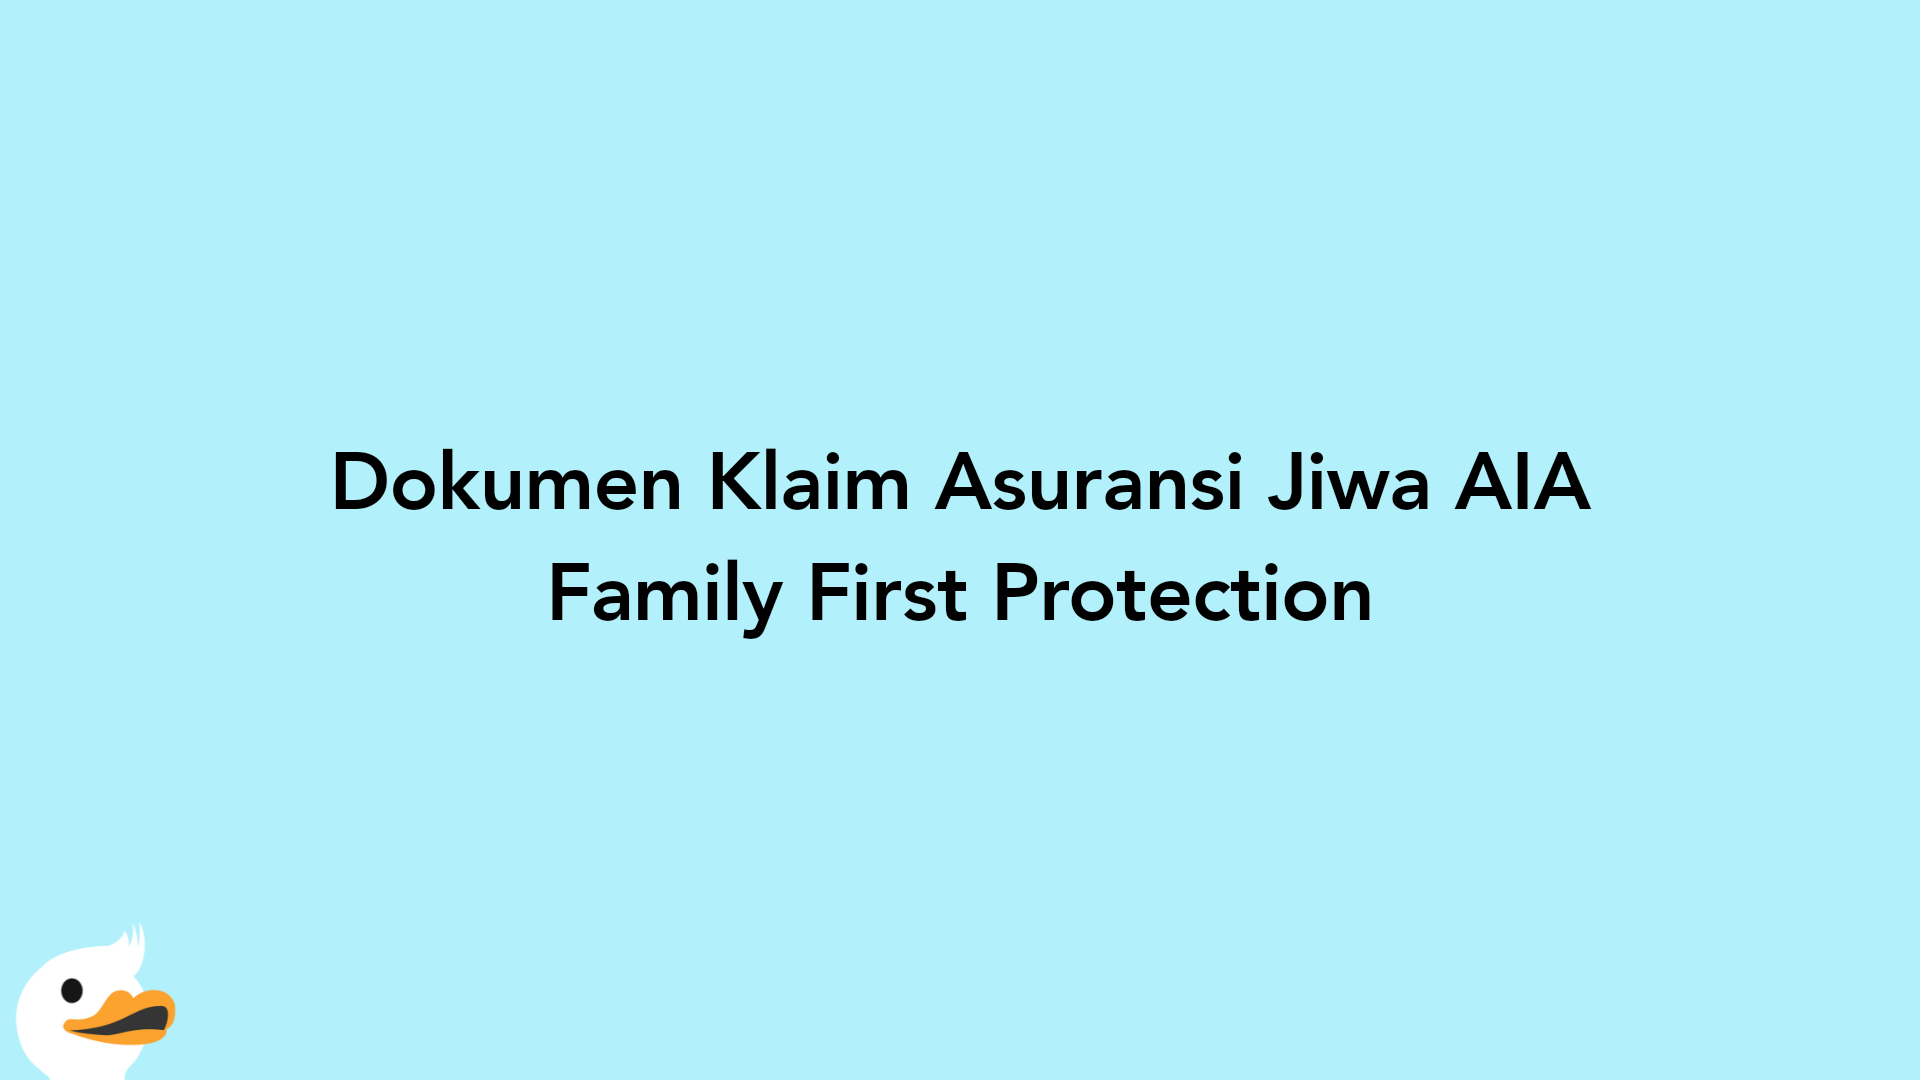 Dokumen Klaim Asuransi Jiwa AIA Family First Protection